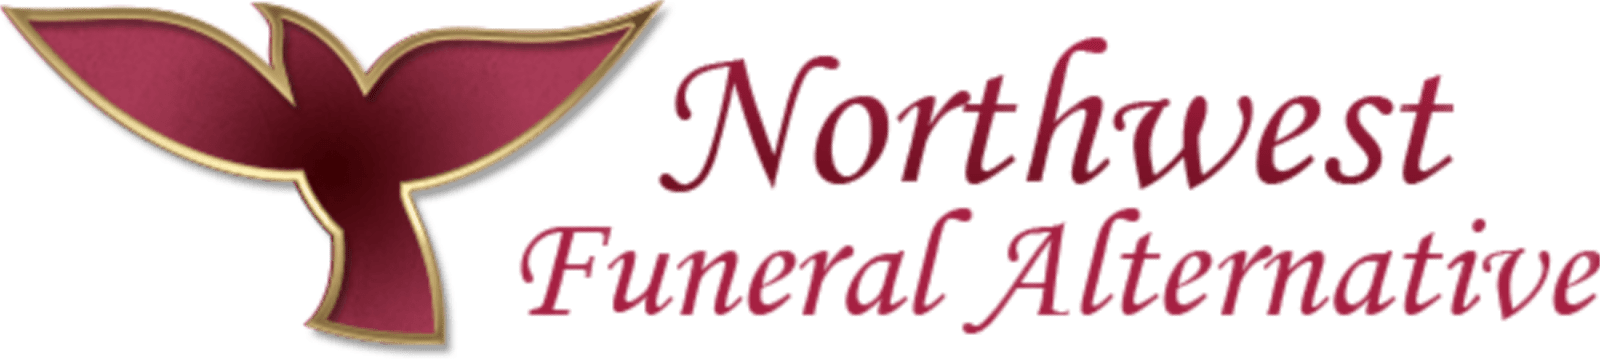 Northwest Funeral Alternative